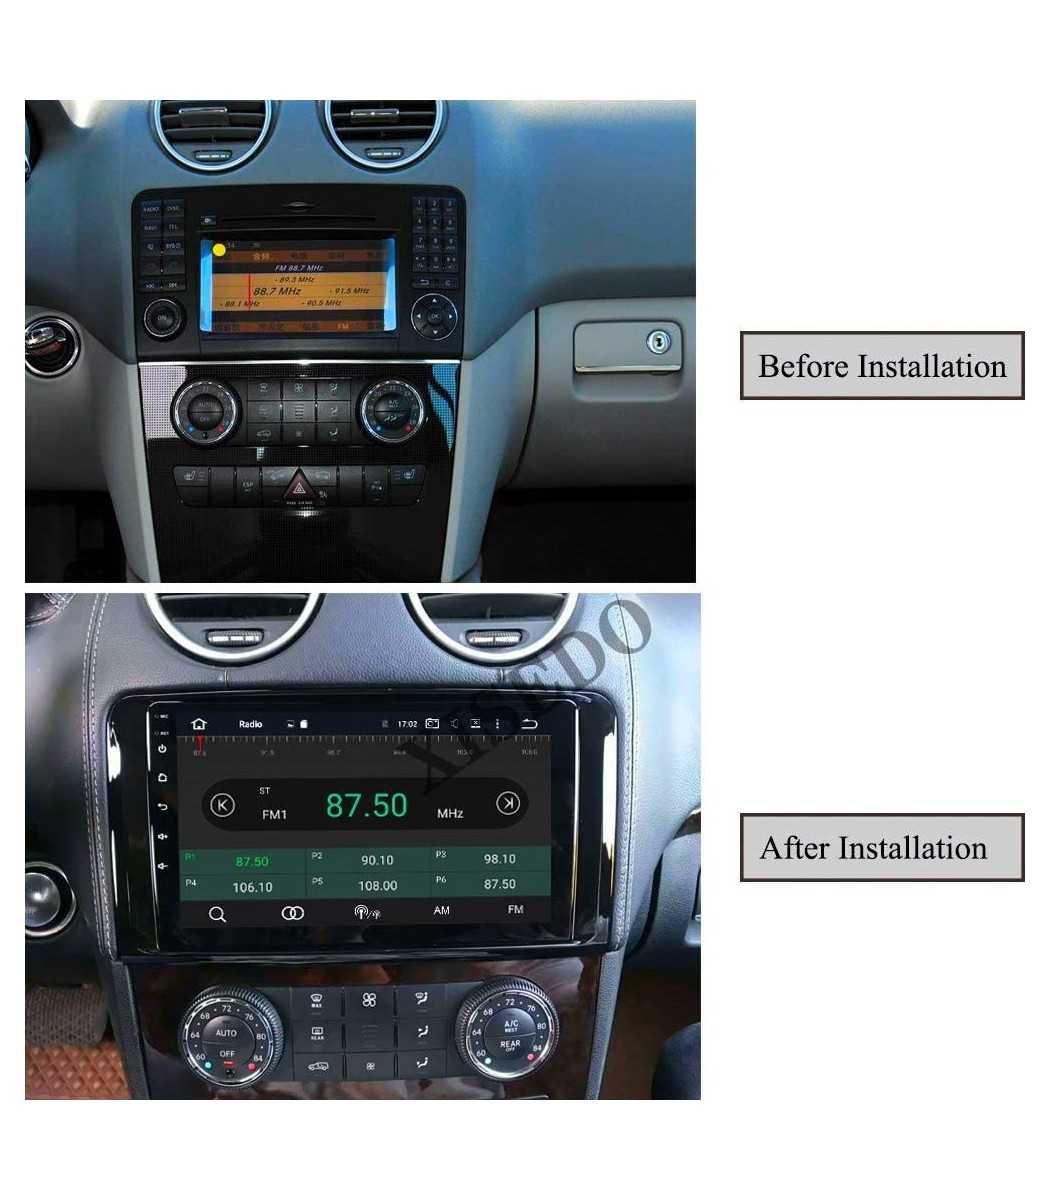 9 Inch Car Radio Frame for Mercedes Benz ML W164 GL X164 2005-2012